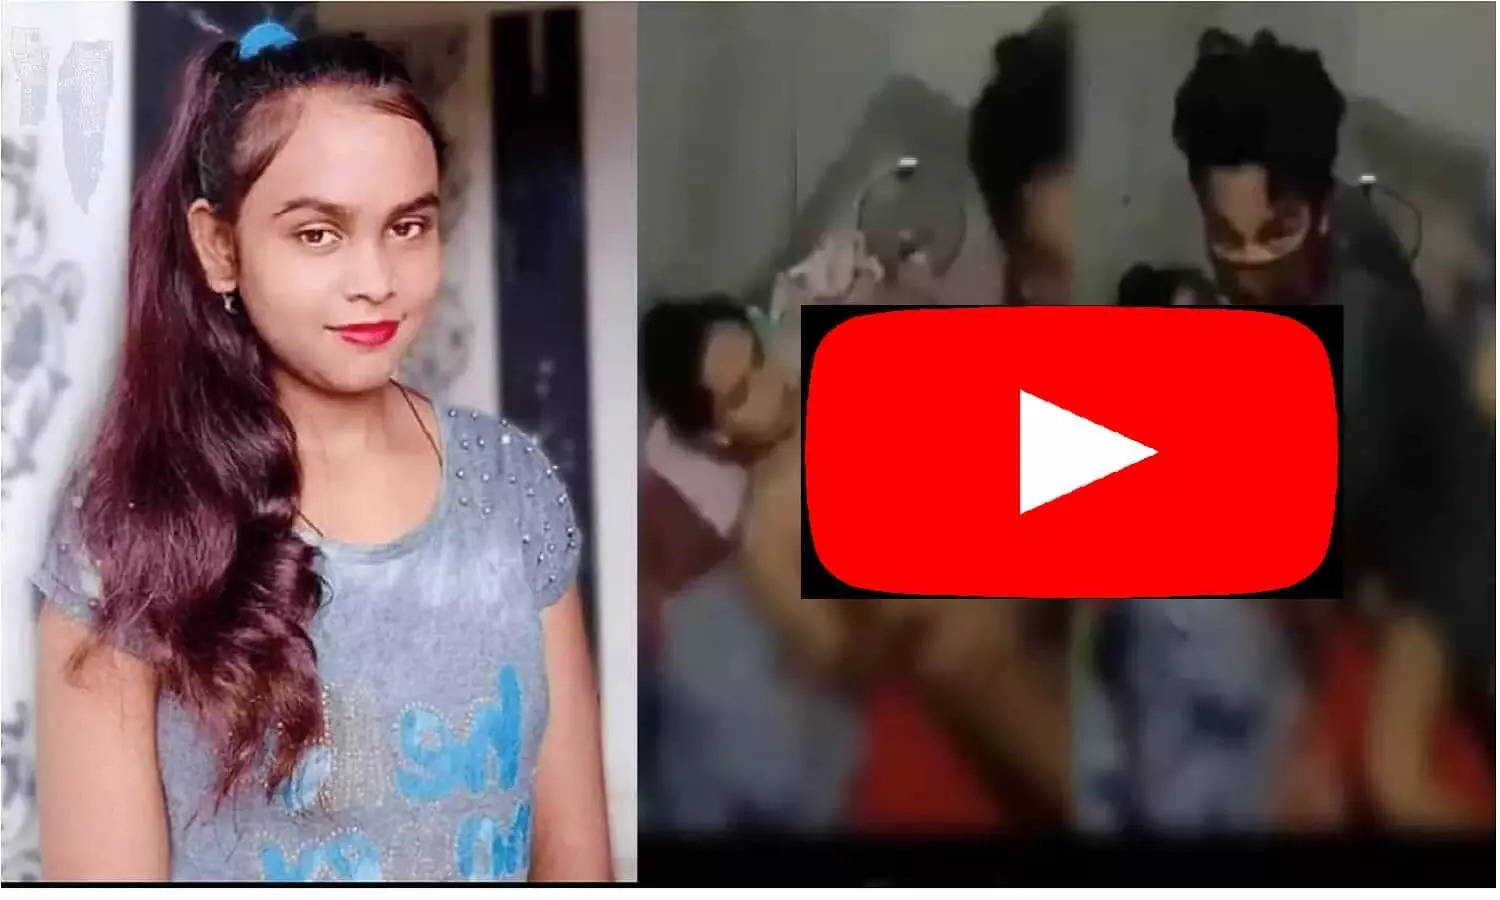 Bhojpuri Singer Shilpi Raj MMS Video: शिल्पी राज का MMS वीडियो बनाने वाला तीसरा शख्स का पता चल गया!Bhojpuri Singer Shilpi Raj MMS Video: The third person who made Shilpi Raj's MMS video has been traced